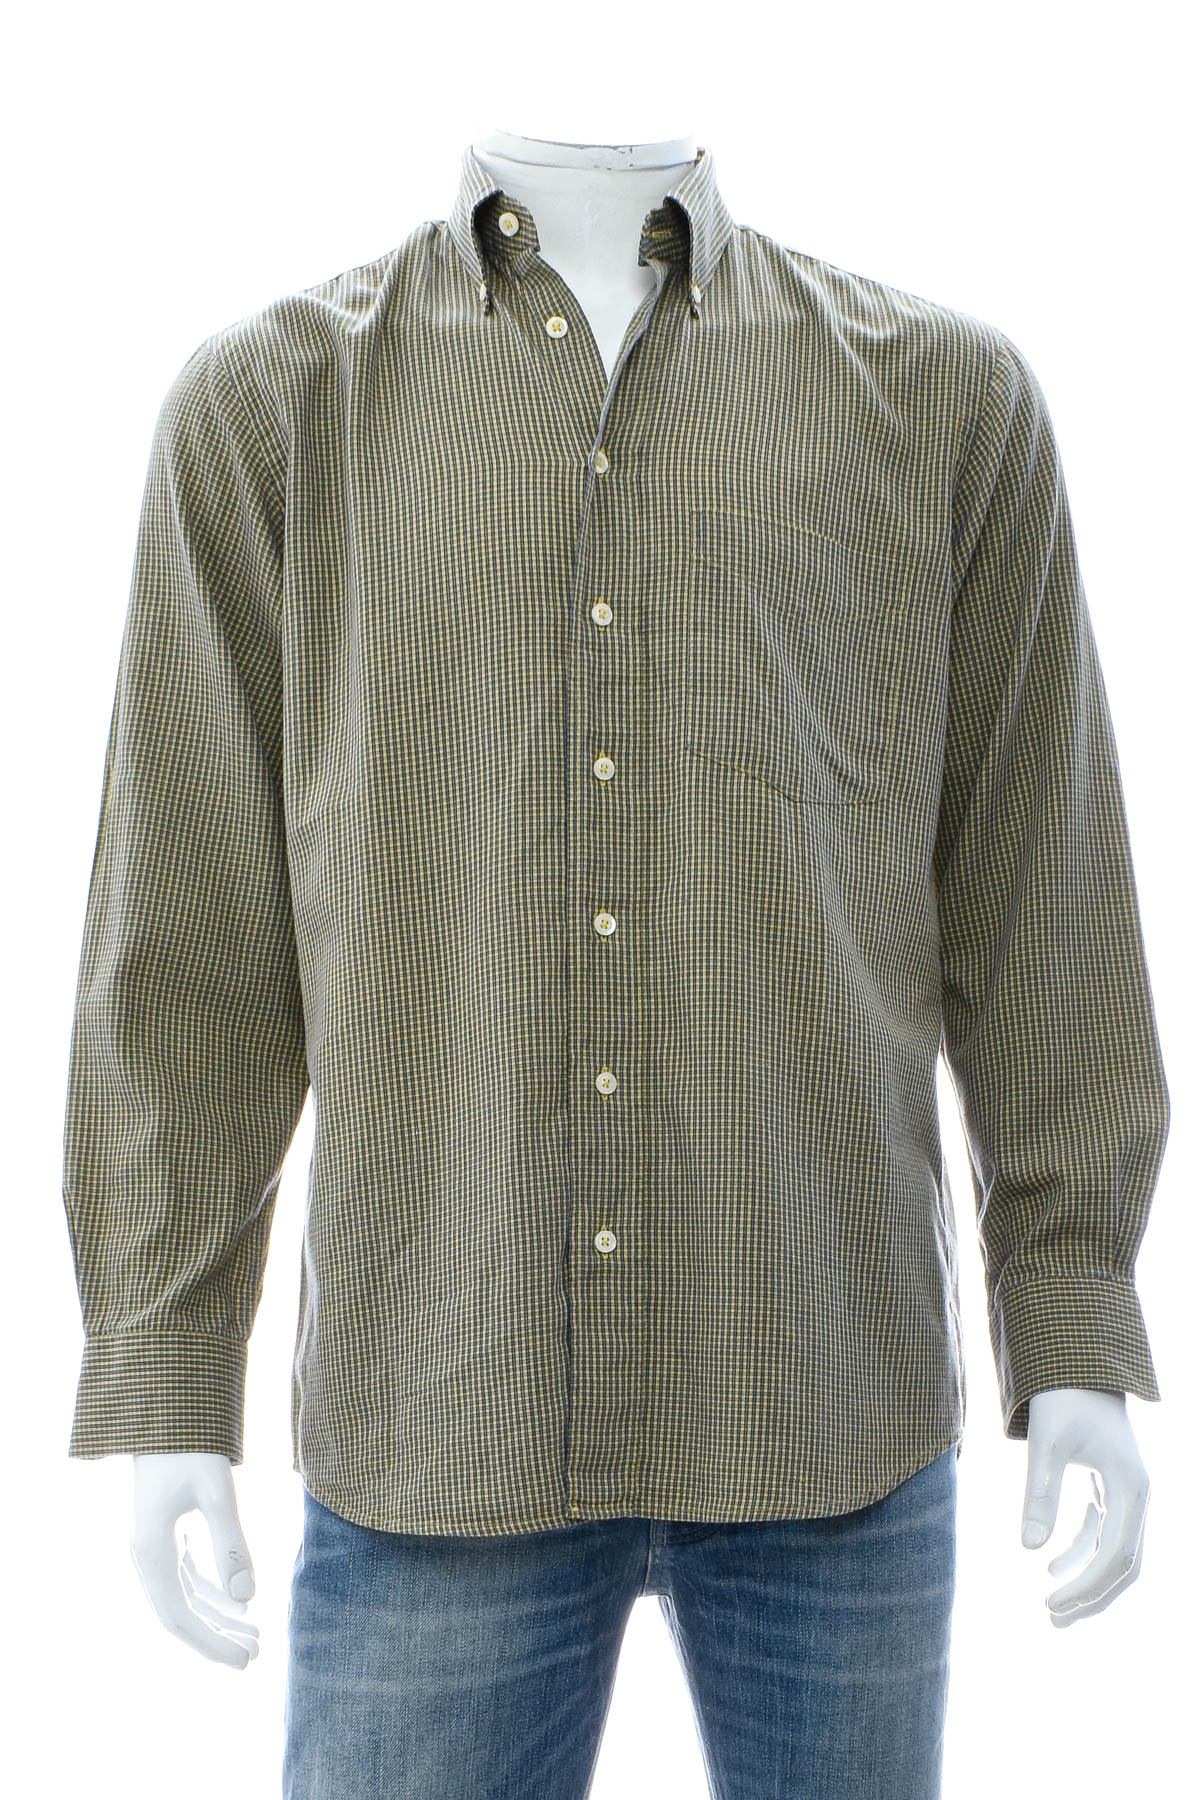 Ανδρικό πουκάμισο - Einhorn - 0